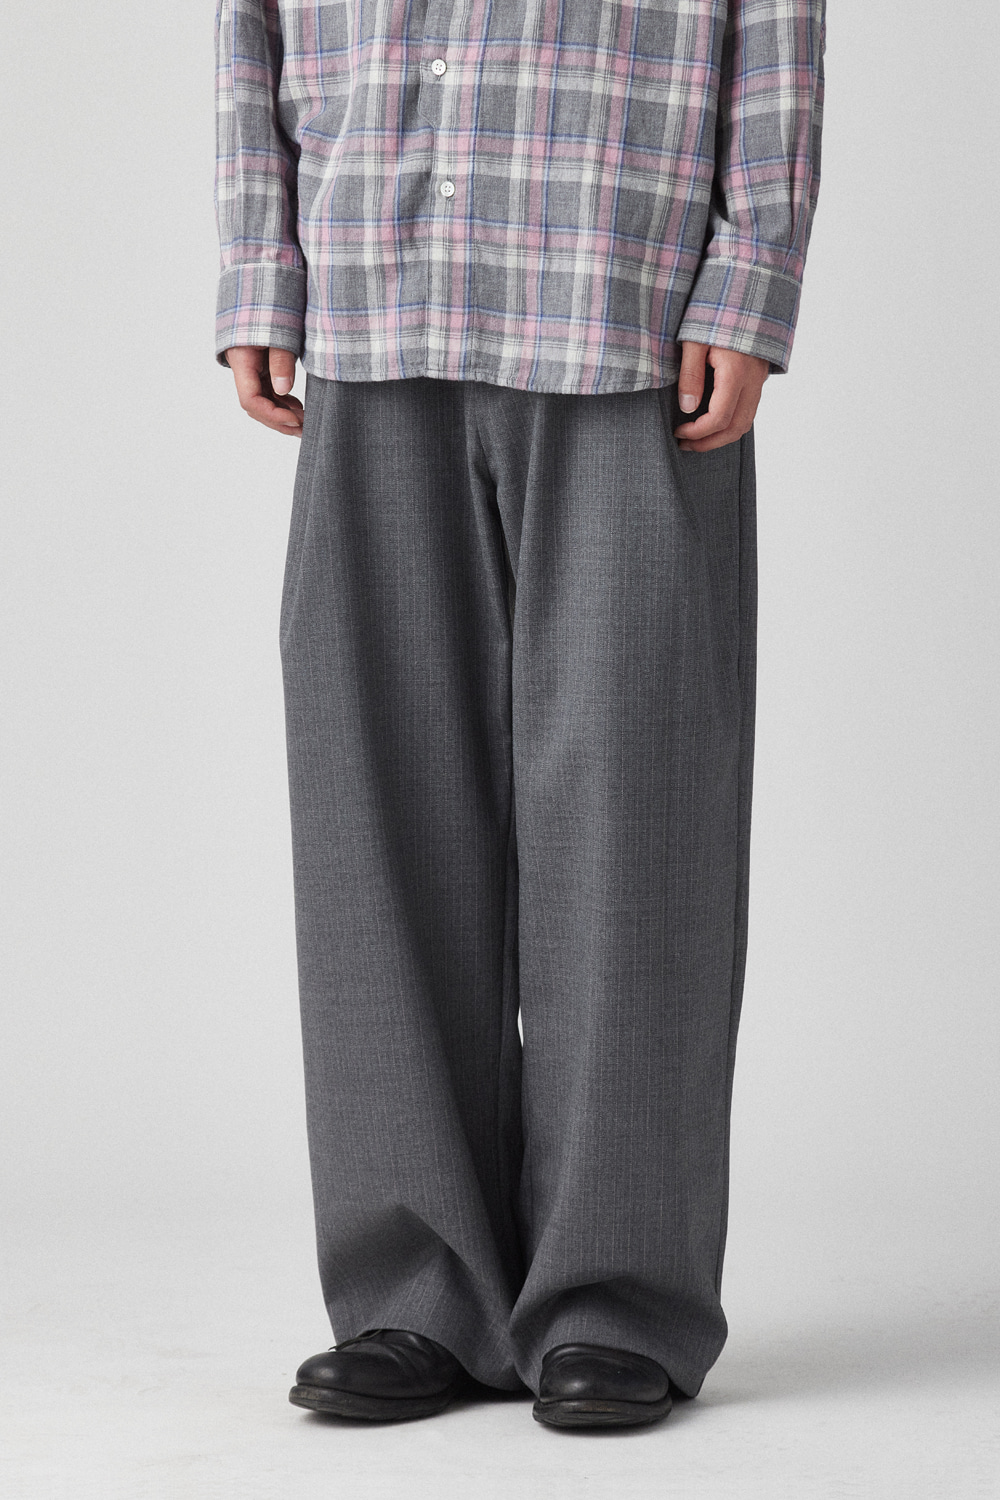 Deep Pleats Trousers Grey/Pink Stripe Wool